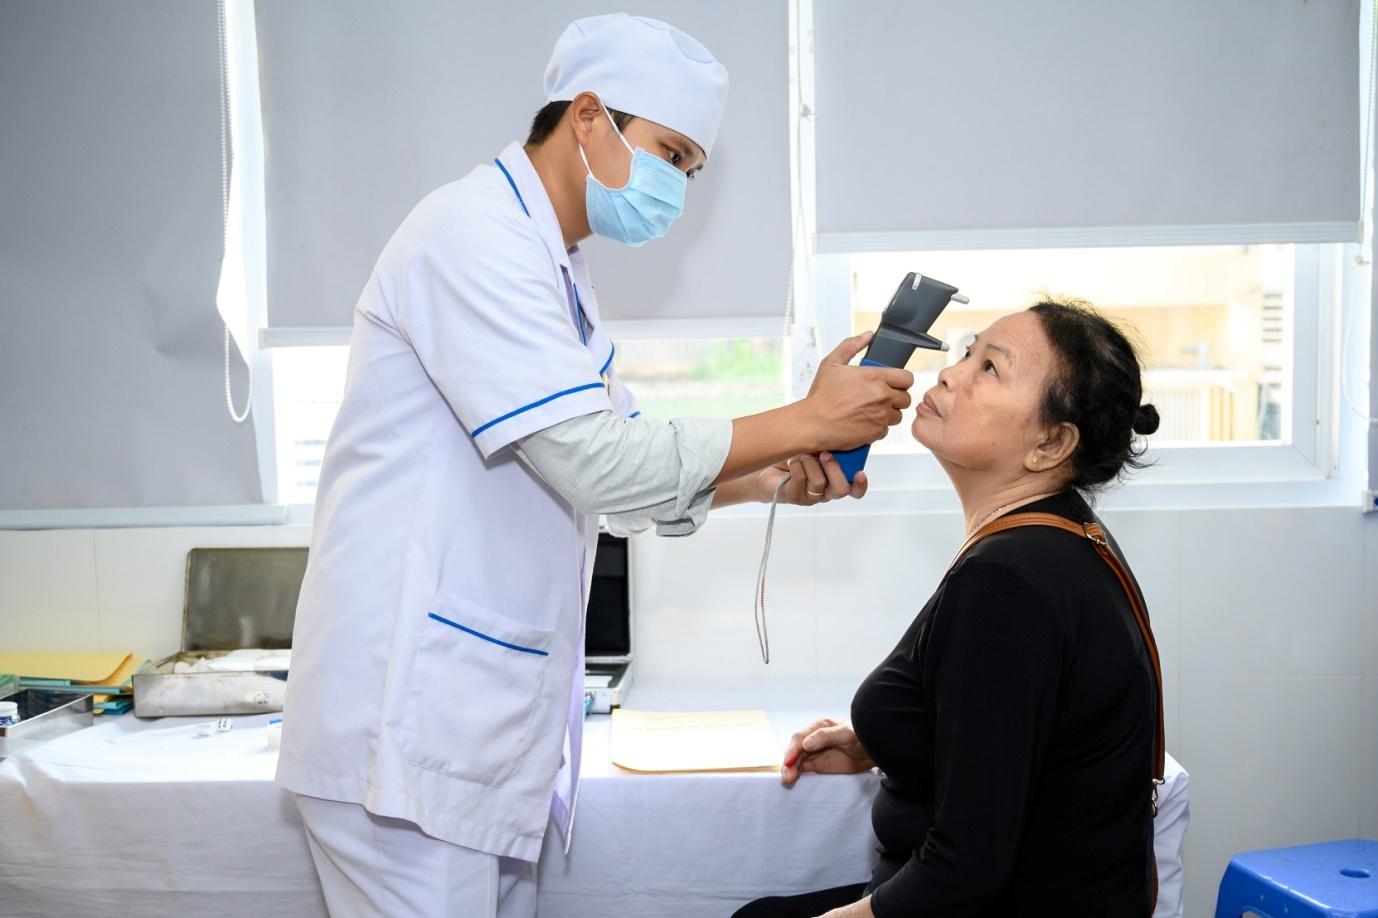 Kiểm tra mắt thường xuyên để nhận được lời khuyên hữu ích từ các bác sĩ nhãn khoa trong việc chăm sóc, giữ gìn đôi mắt khỏe đẹp.